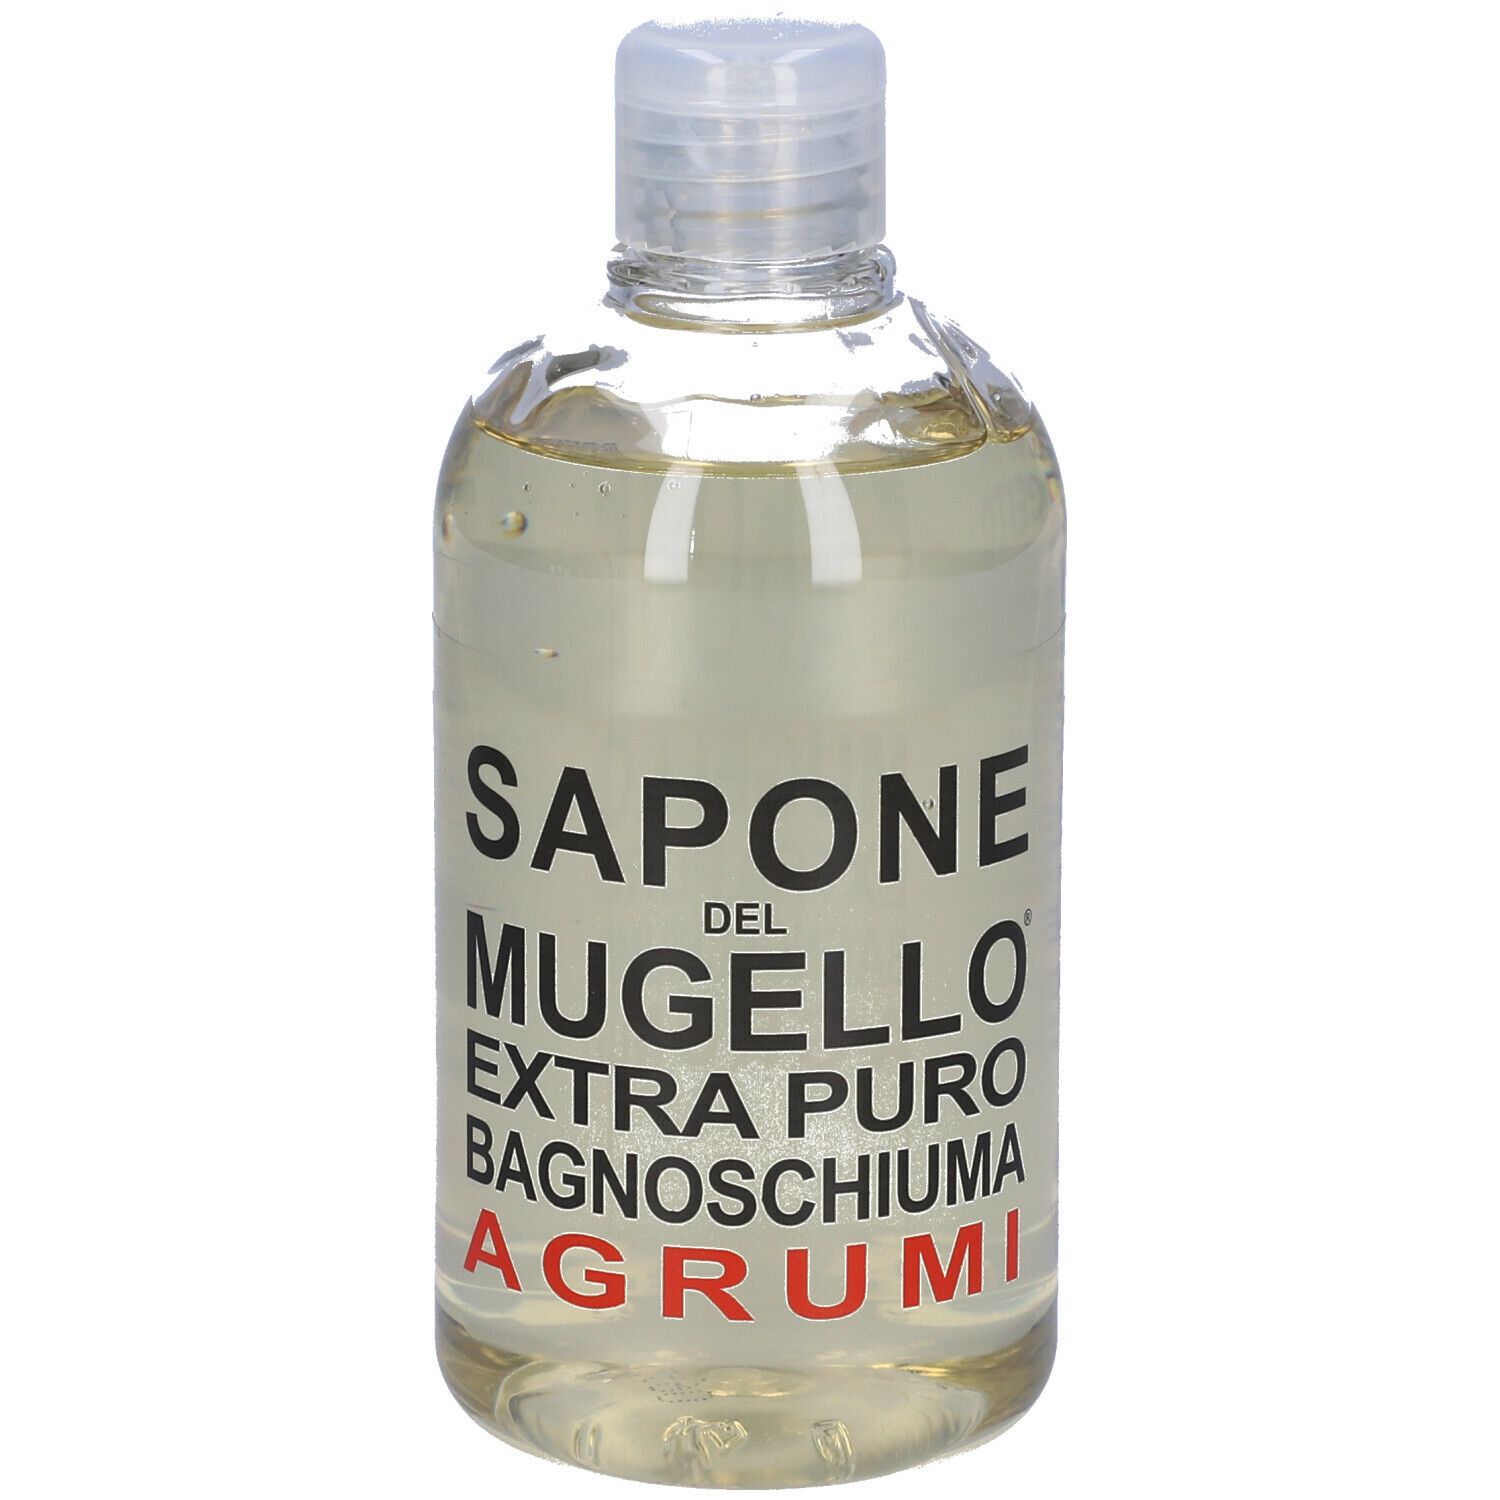 Image of Sapone Del Mugello Extra Puro Bagnoschiuma Agrumi